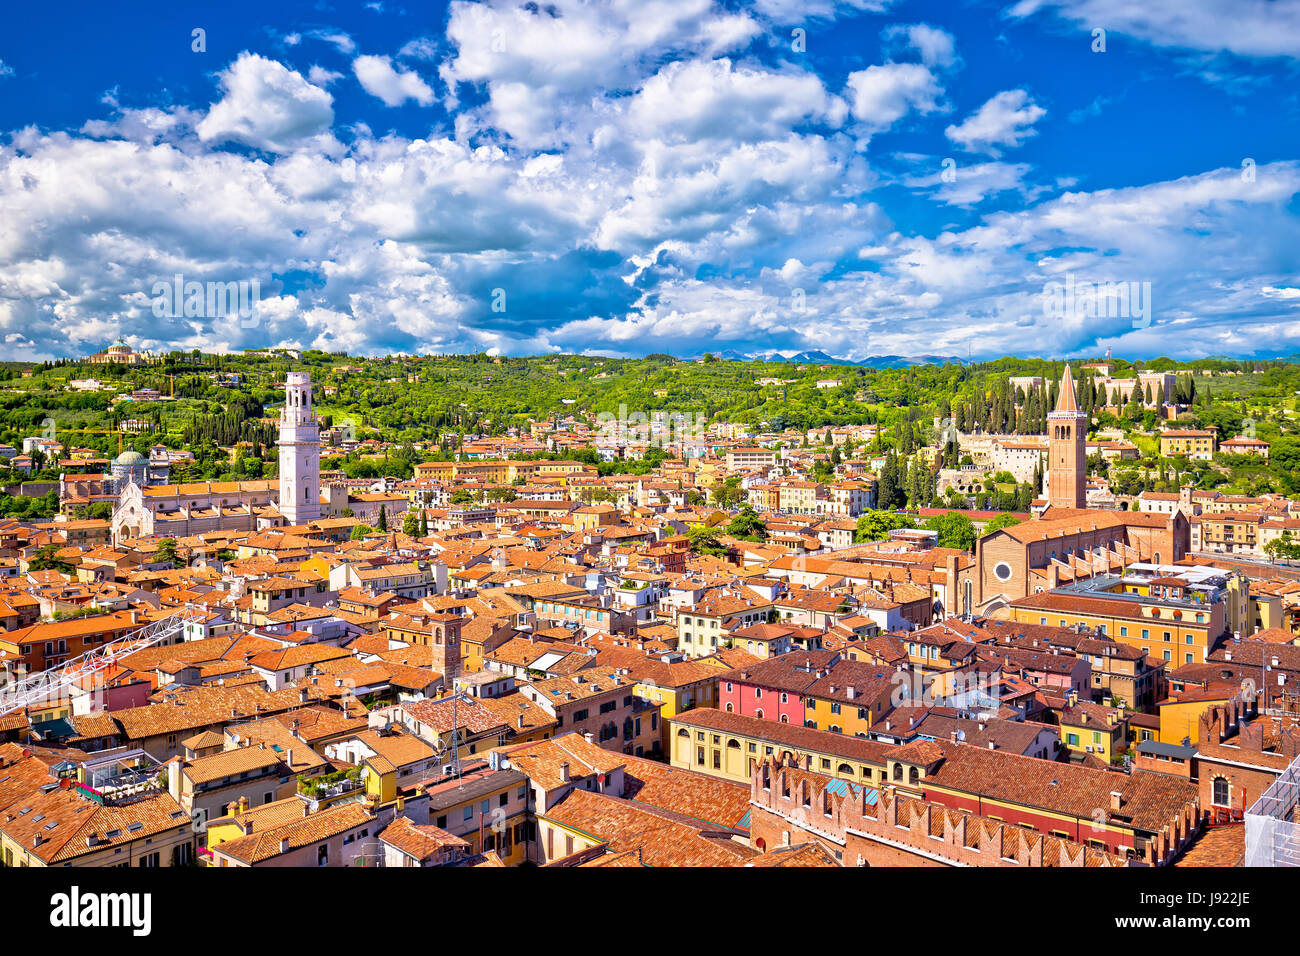 Verona tetti e cityscape vista aerea, regione italiana Veneto Foto Stock